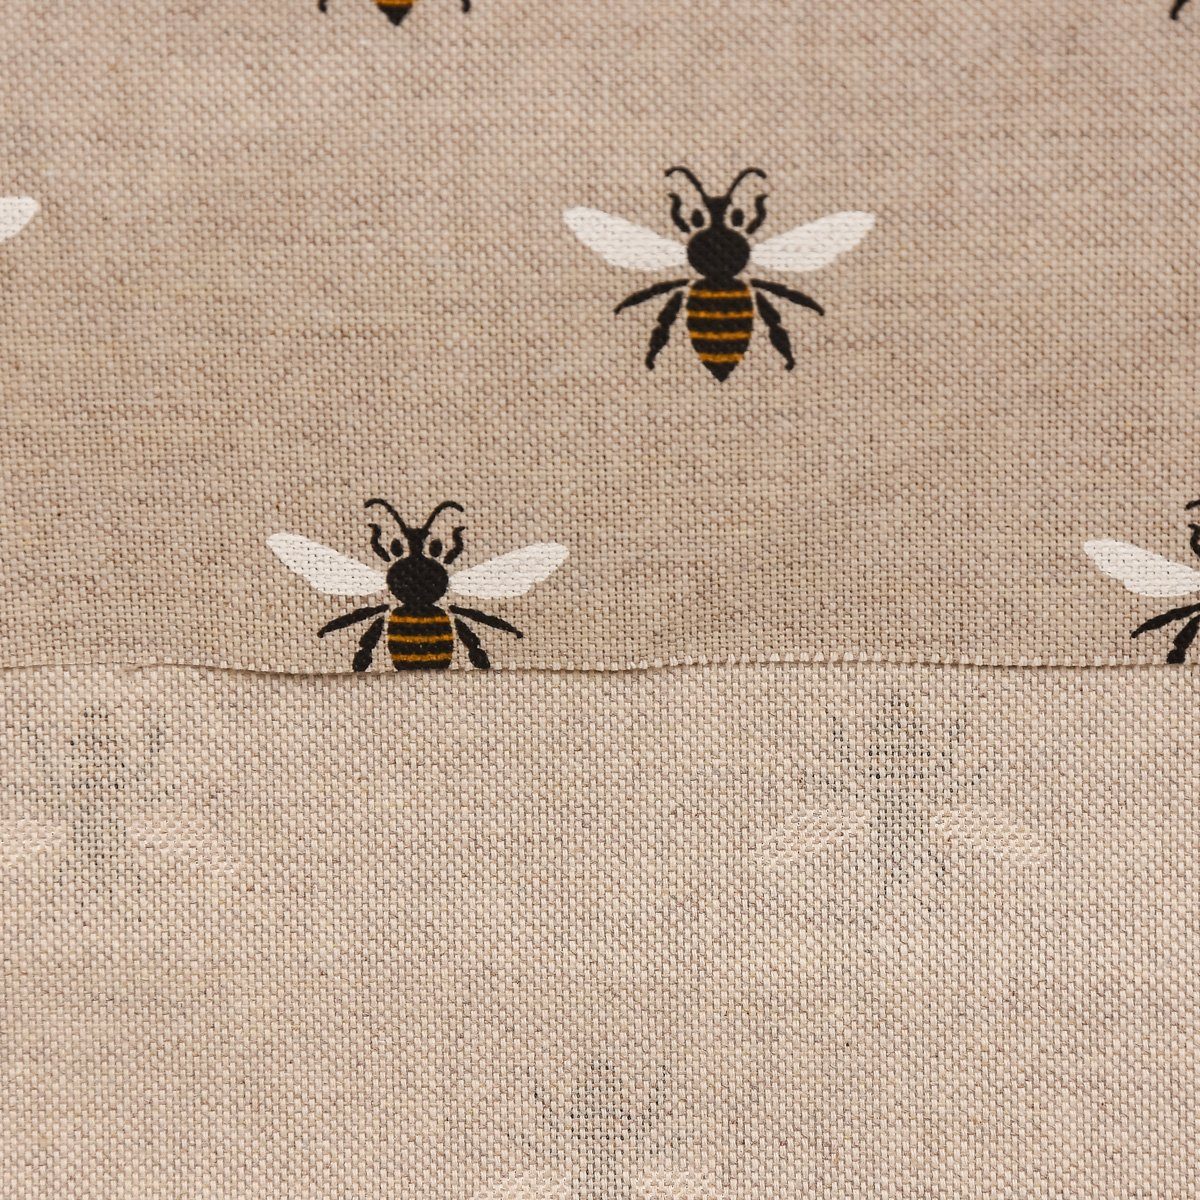 LEBEN., in vorgewaschen made (1 SCHÖNER Germany, LEBEN. St), Vorhang SCHÖNER Baumwolle, oder Vorhang Bienen handmade, blickdicht, 245cm Wunschlänge,